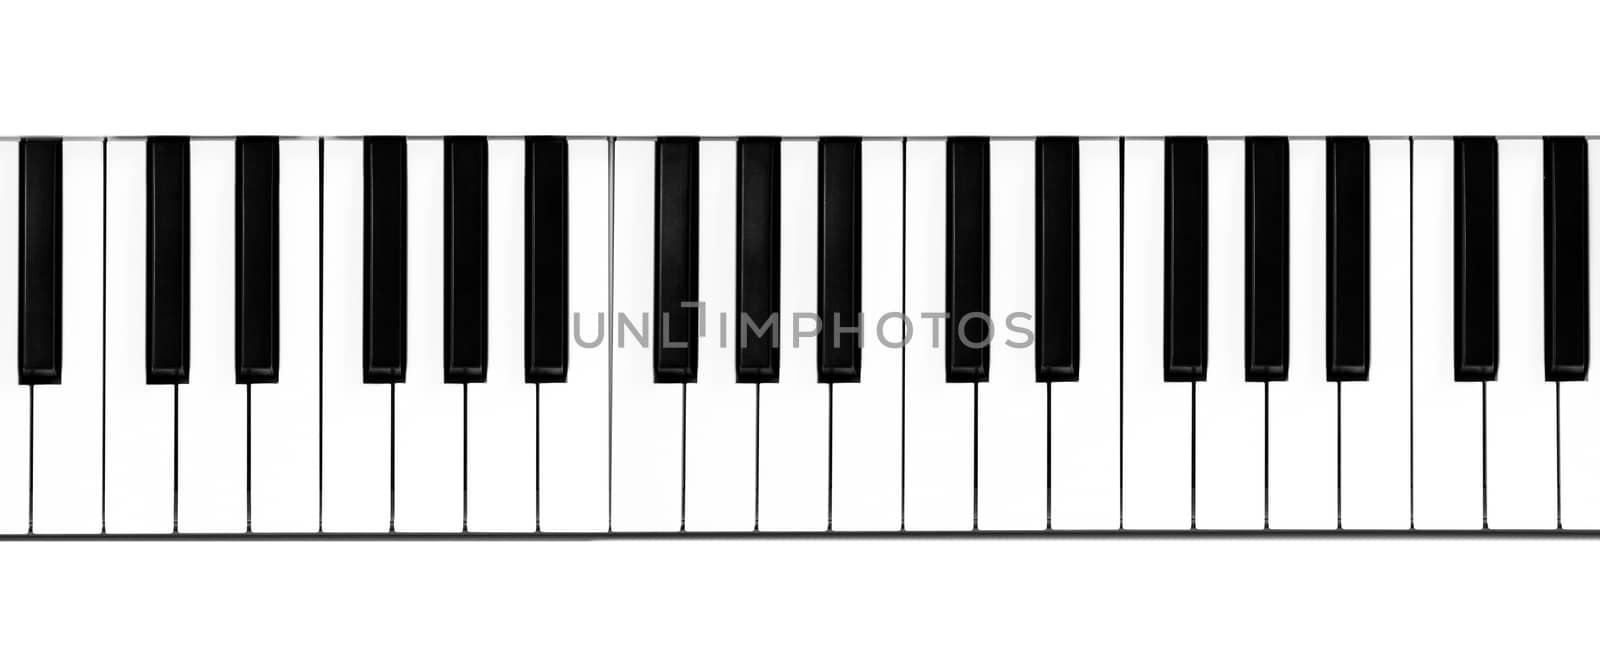 Piano keyboard close-up by ozaiachin